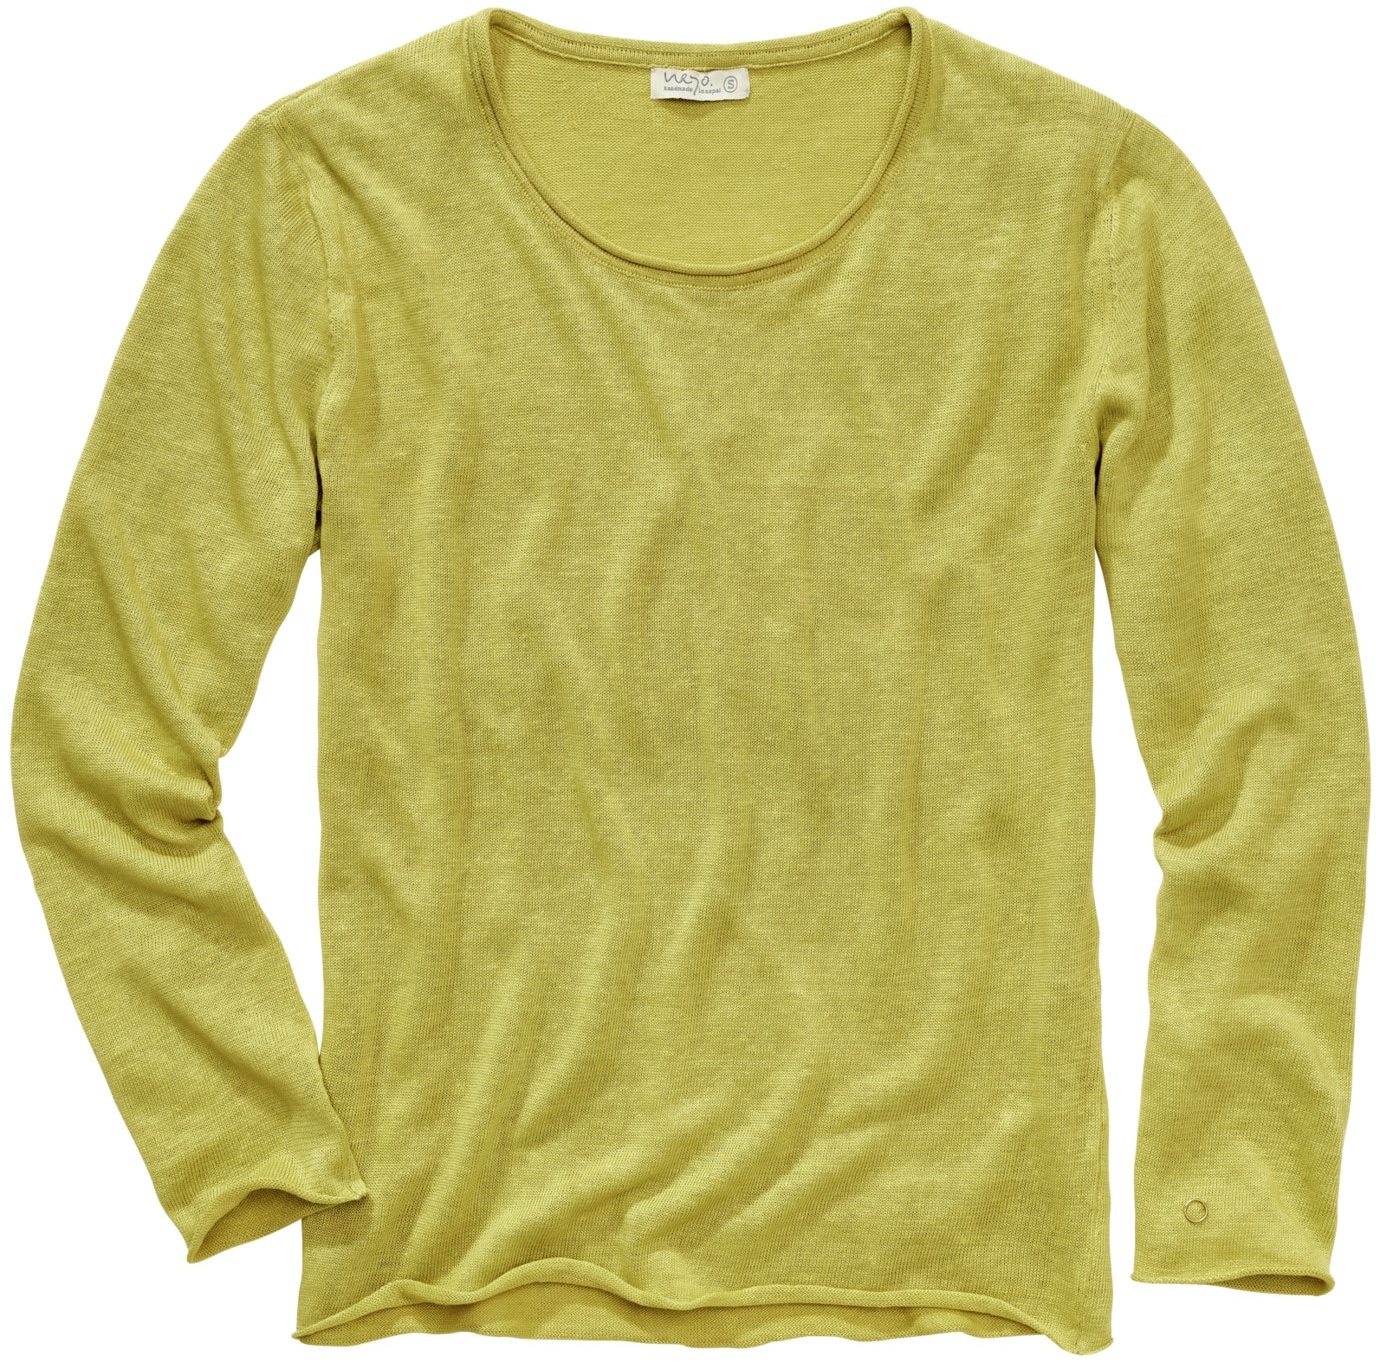 Neyo Herren Sweater Regular Fit Gelb einfarbig - M